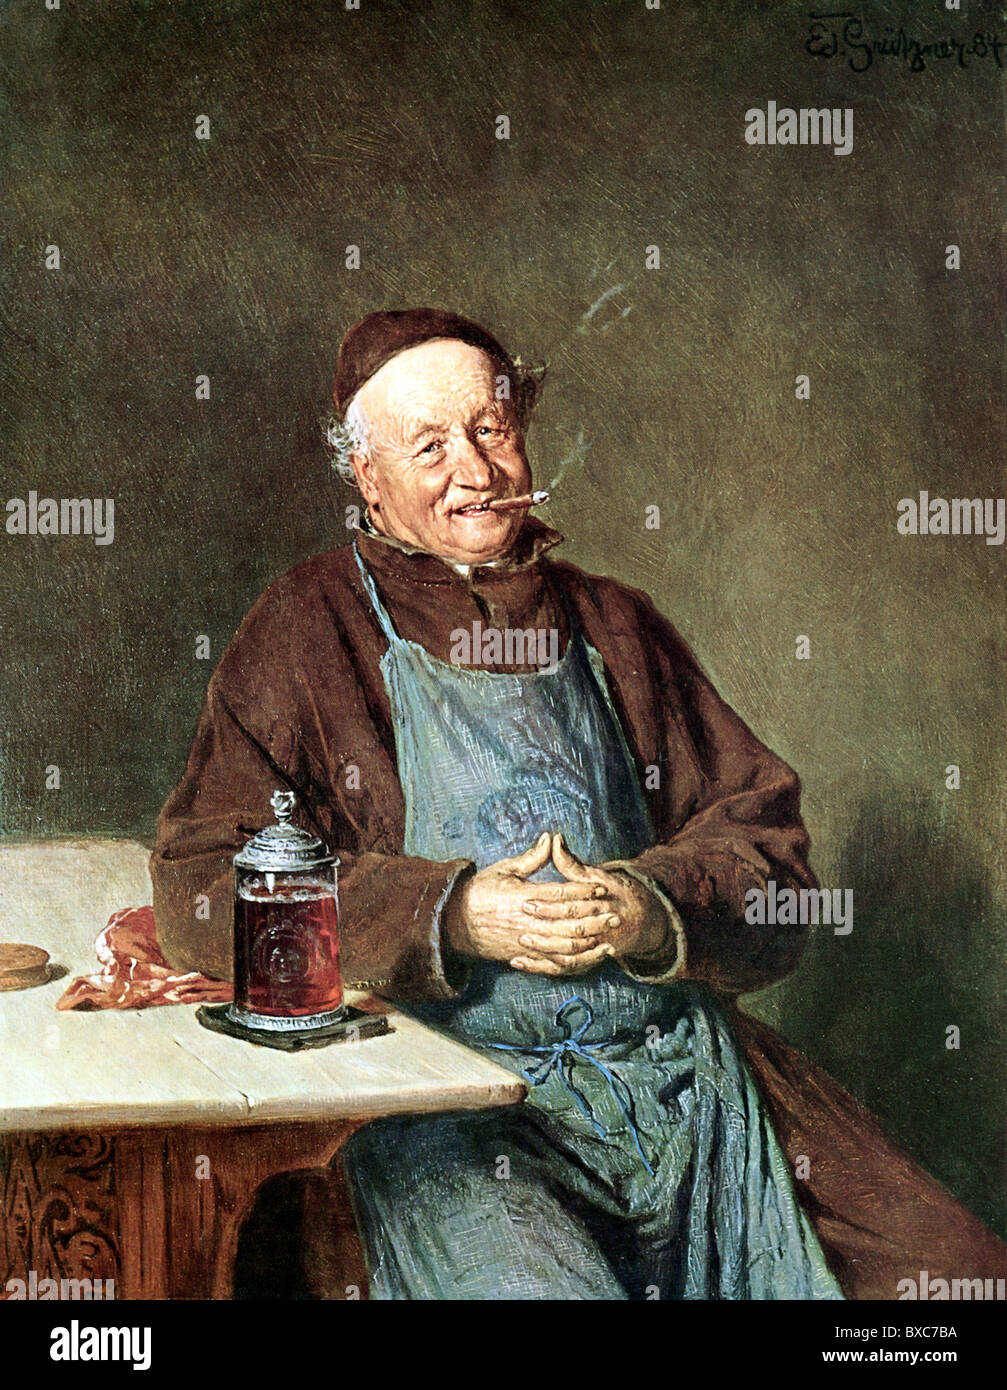 Alcohol, cerveza, 'Beim Klosterbier' (con cerveza de claustro), impresión después de la pintura de Eduard Grützner (1846 - 1925), , Derechos adicionales-Clearences-no disponible Foto de stock